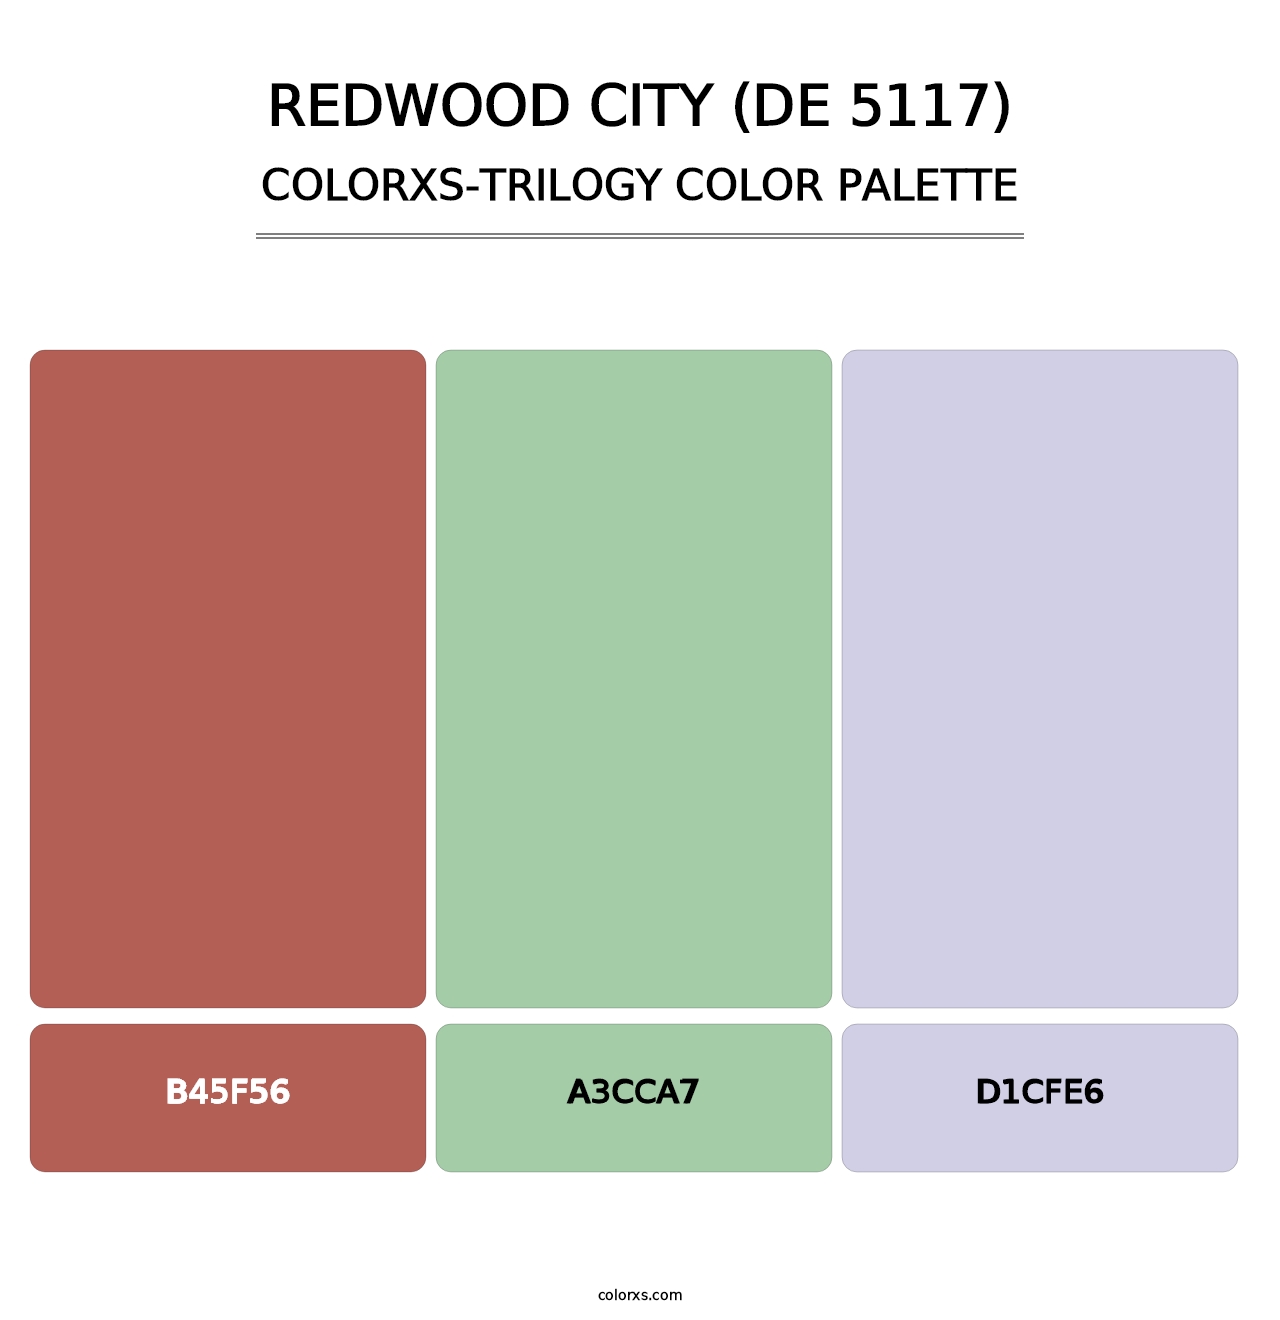 Redwood City (DE 5117) - Colorxs Trilogy Palette